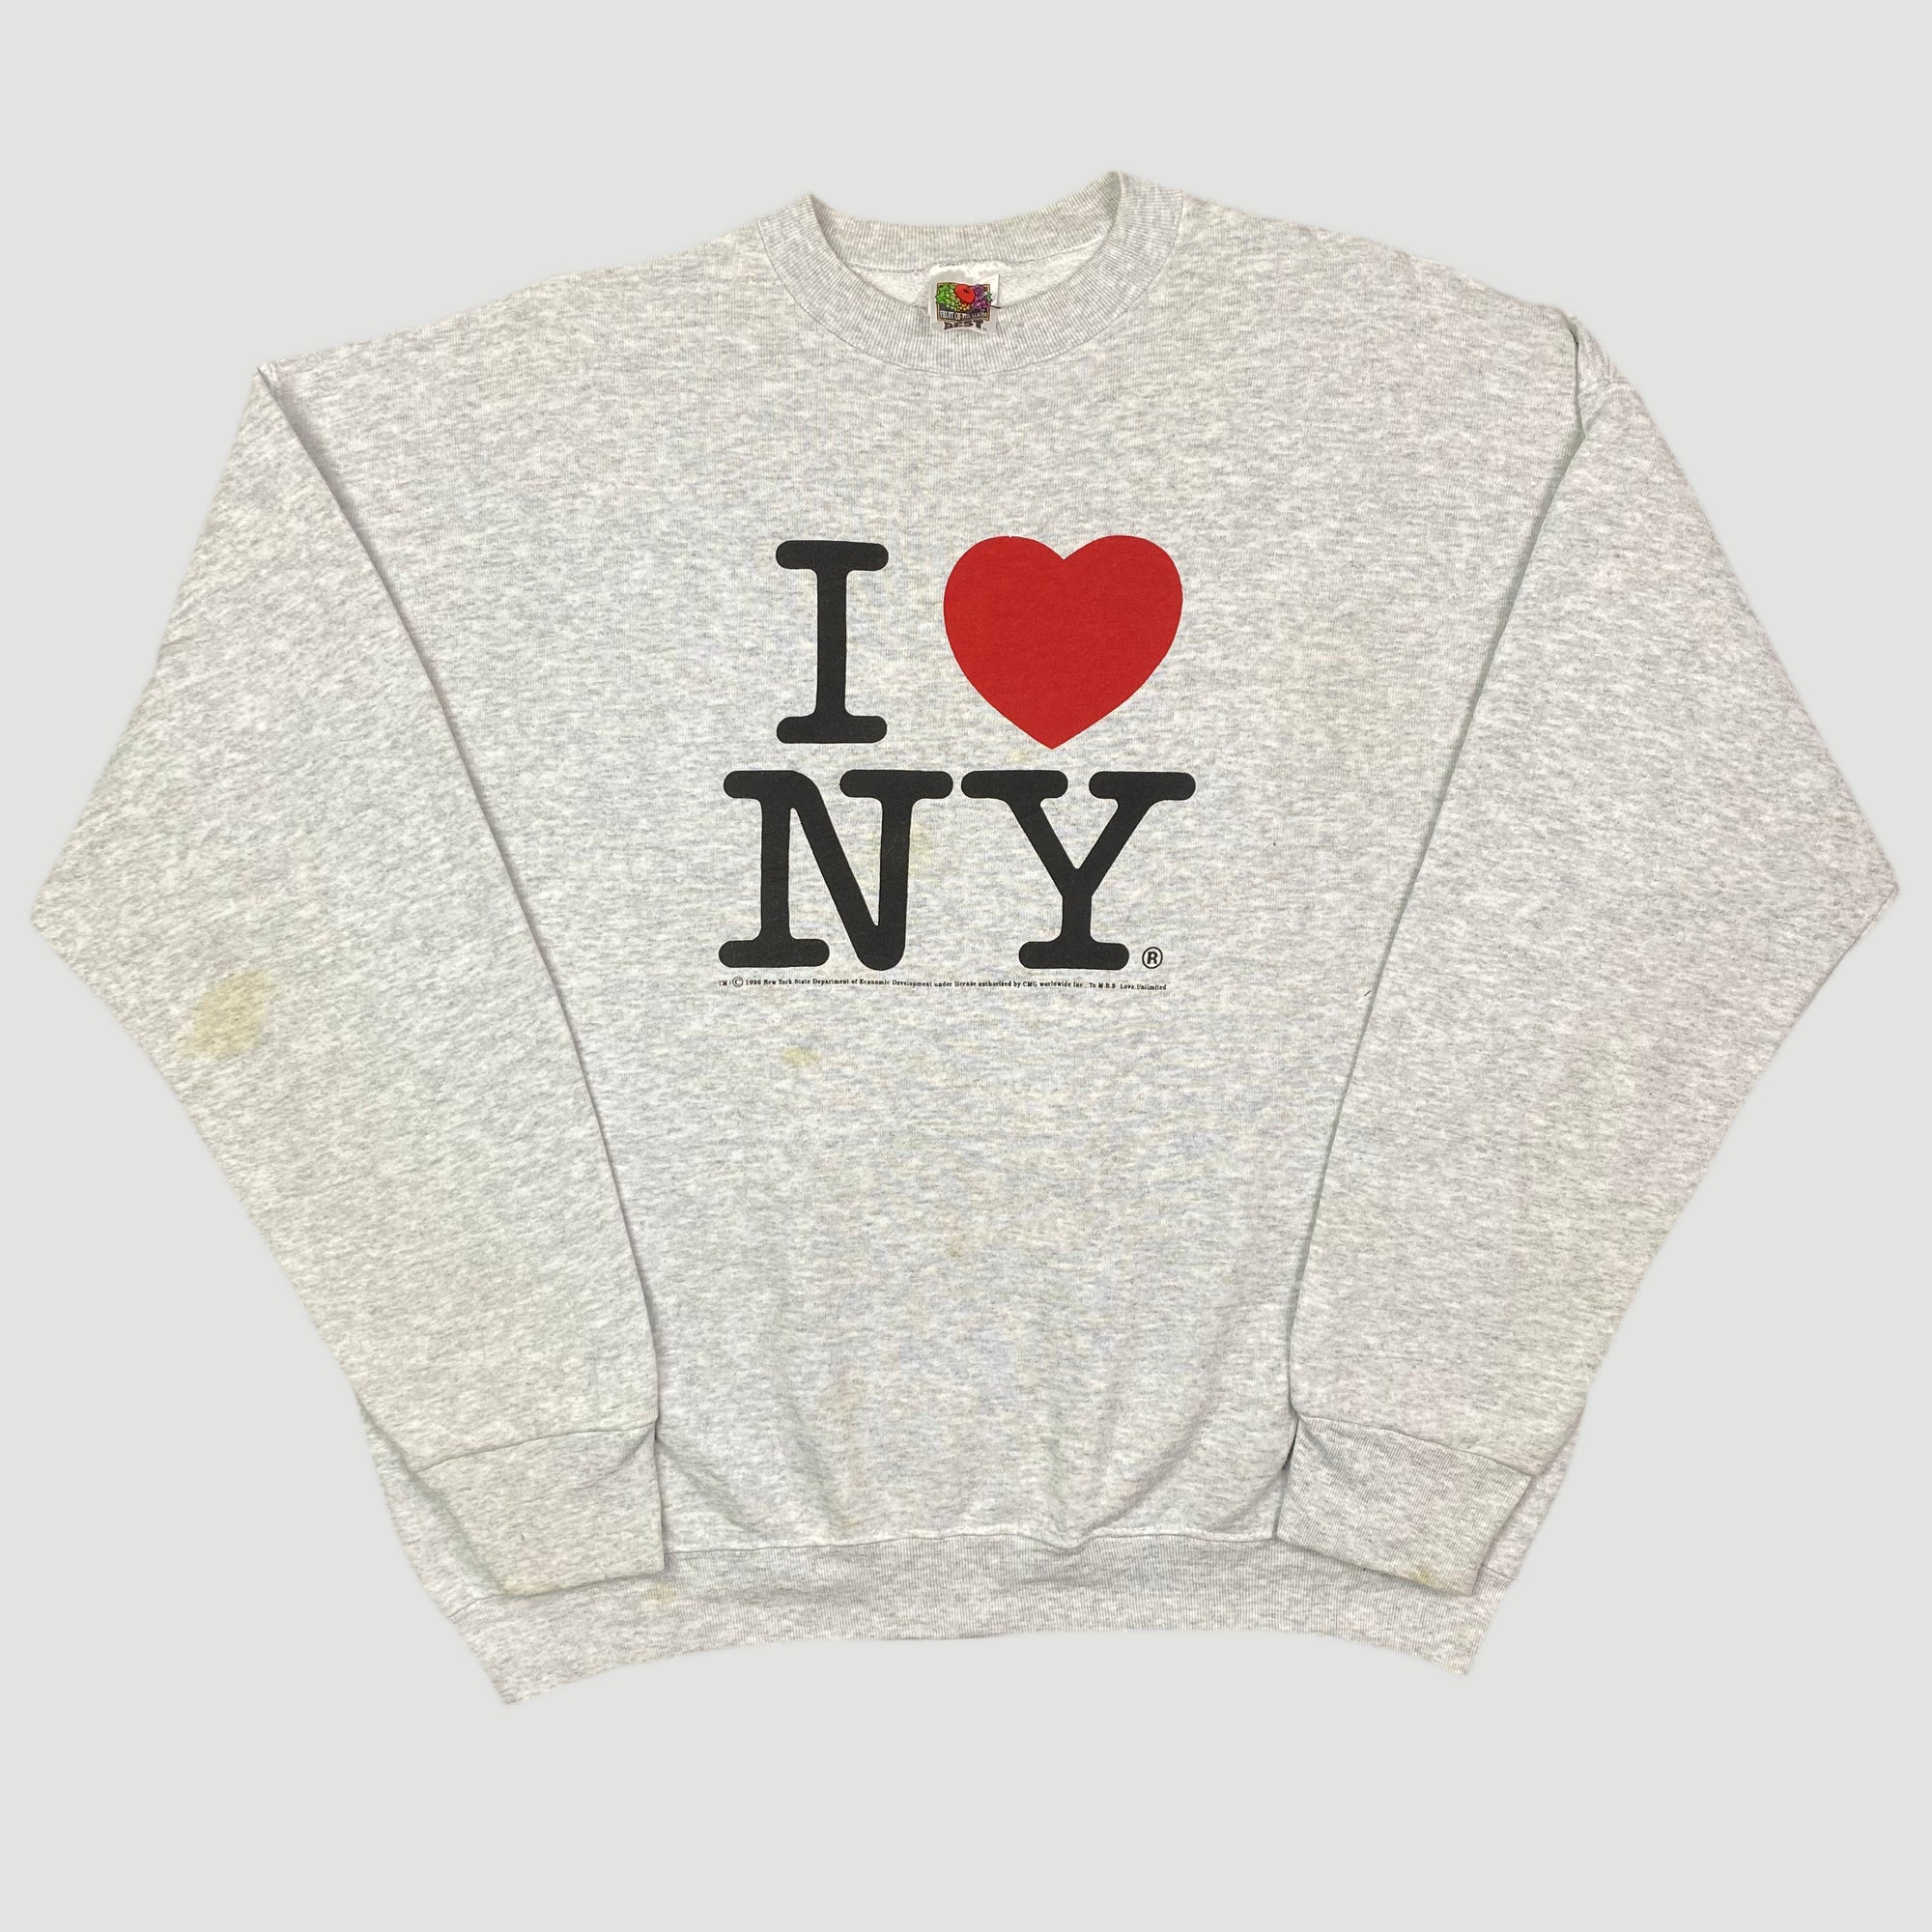 NEW YORK Hooded Sweatshirt - WRDMRK